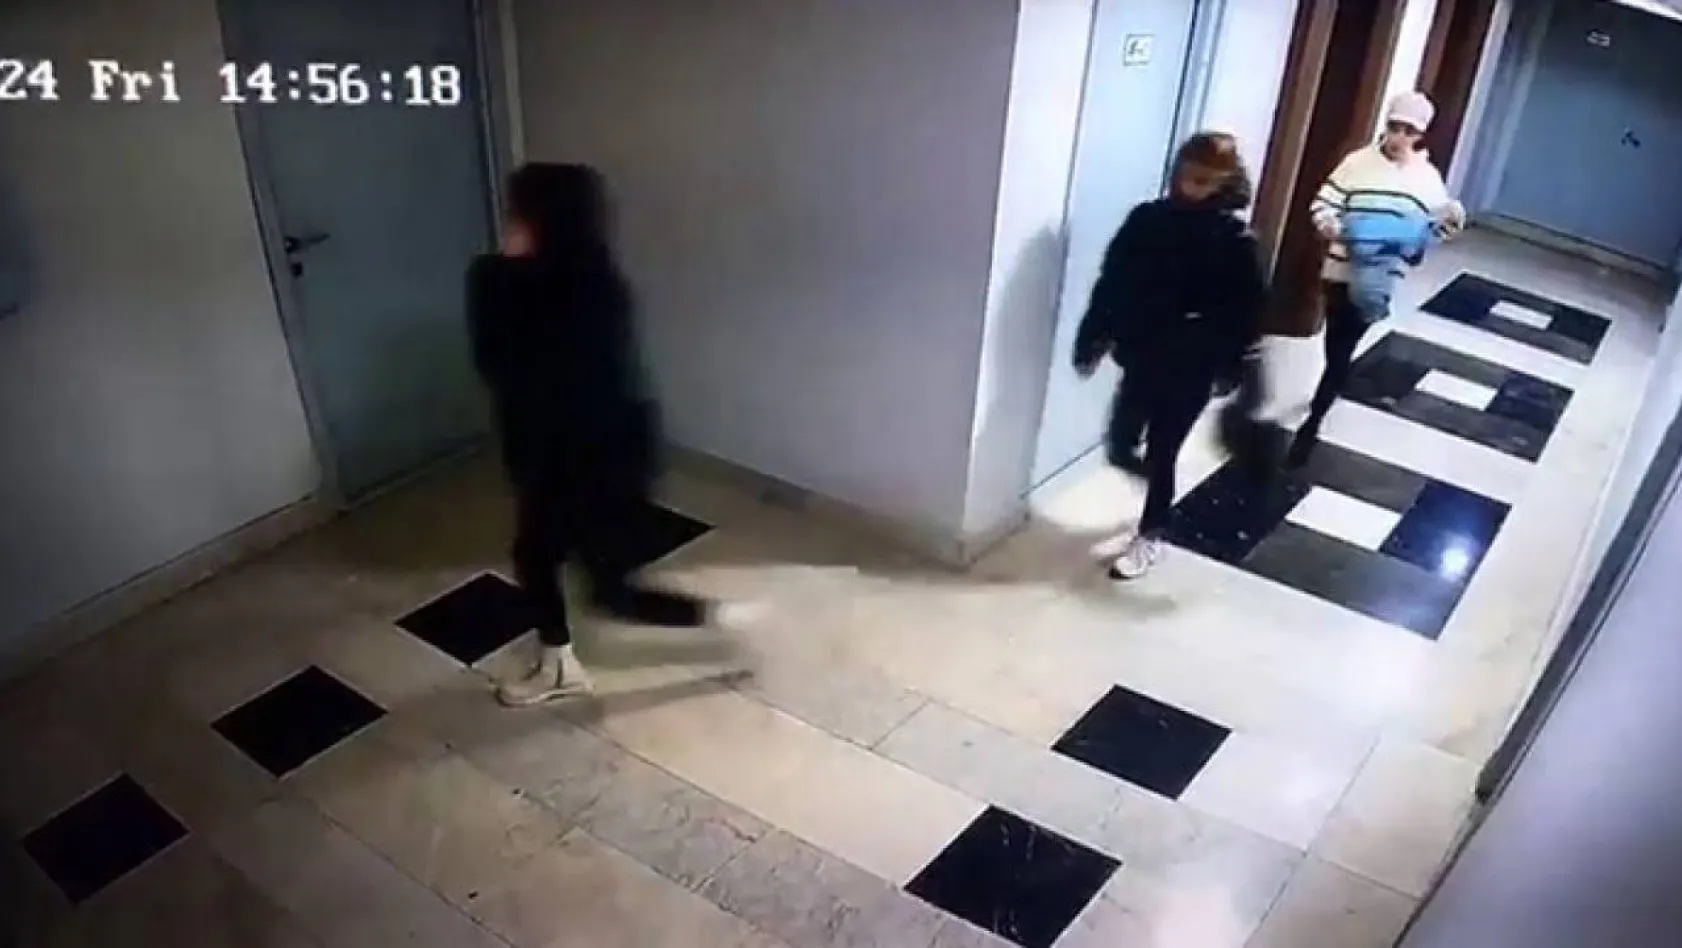 Rezidanslara girerek hırsızlık yapan 3 kadından 2'si yakalandı: O anlar kamerada